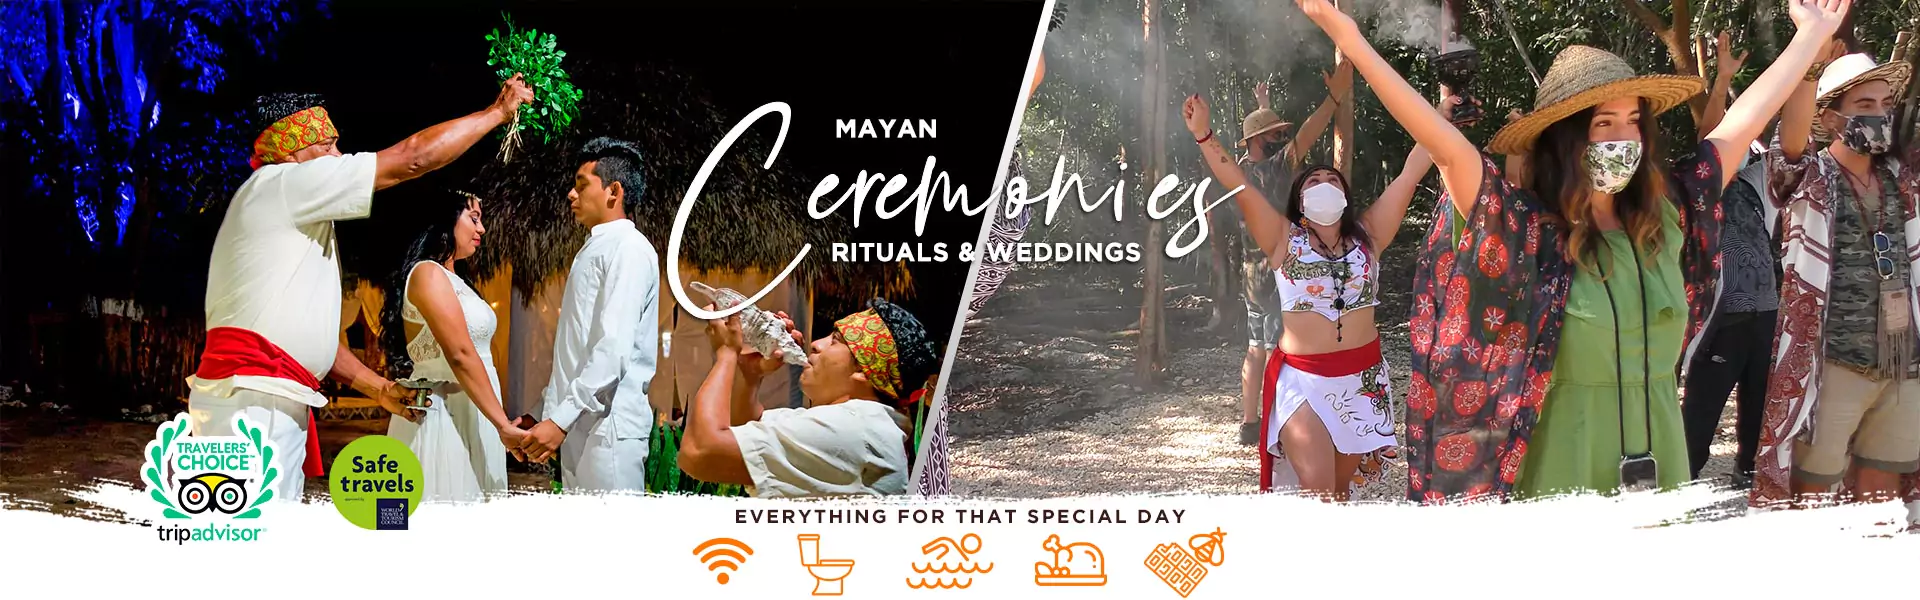 mayan-wedding-and-ritual-in-riviera-maya-tulum-coba